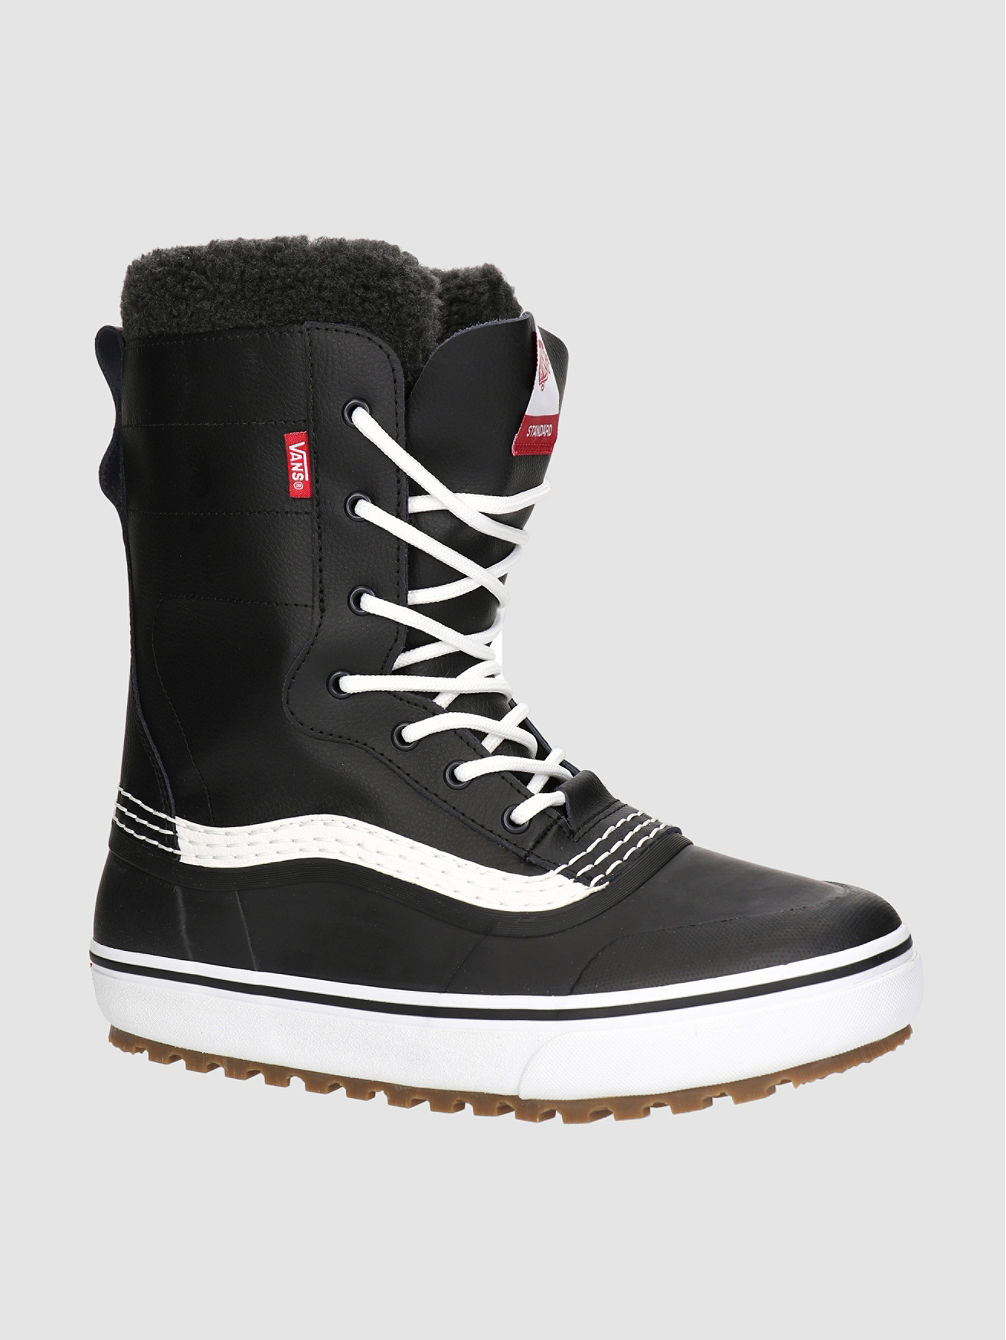 Standard Snow MTE 2024 Schuhe